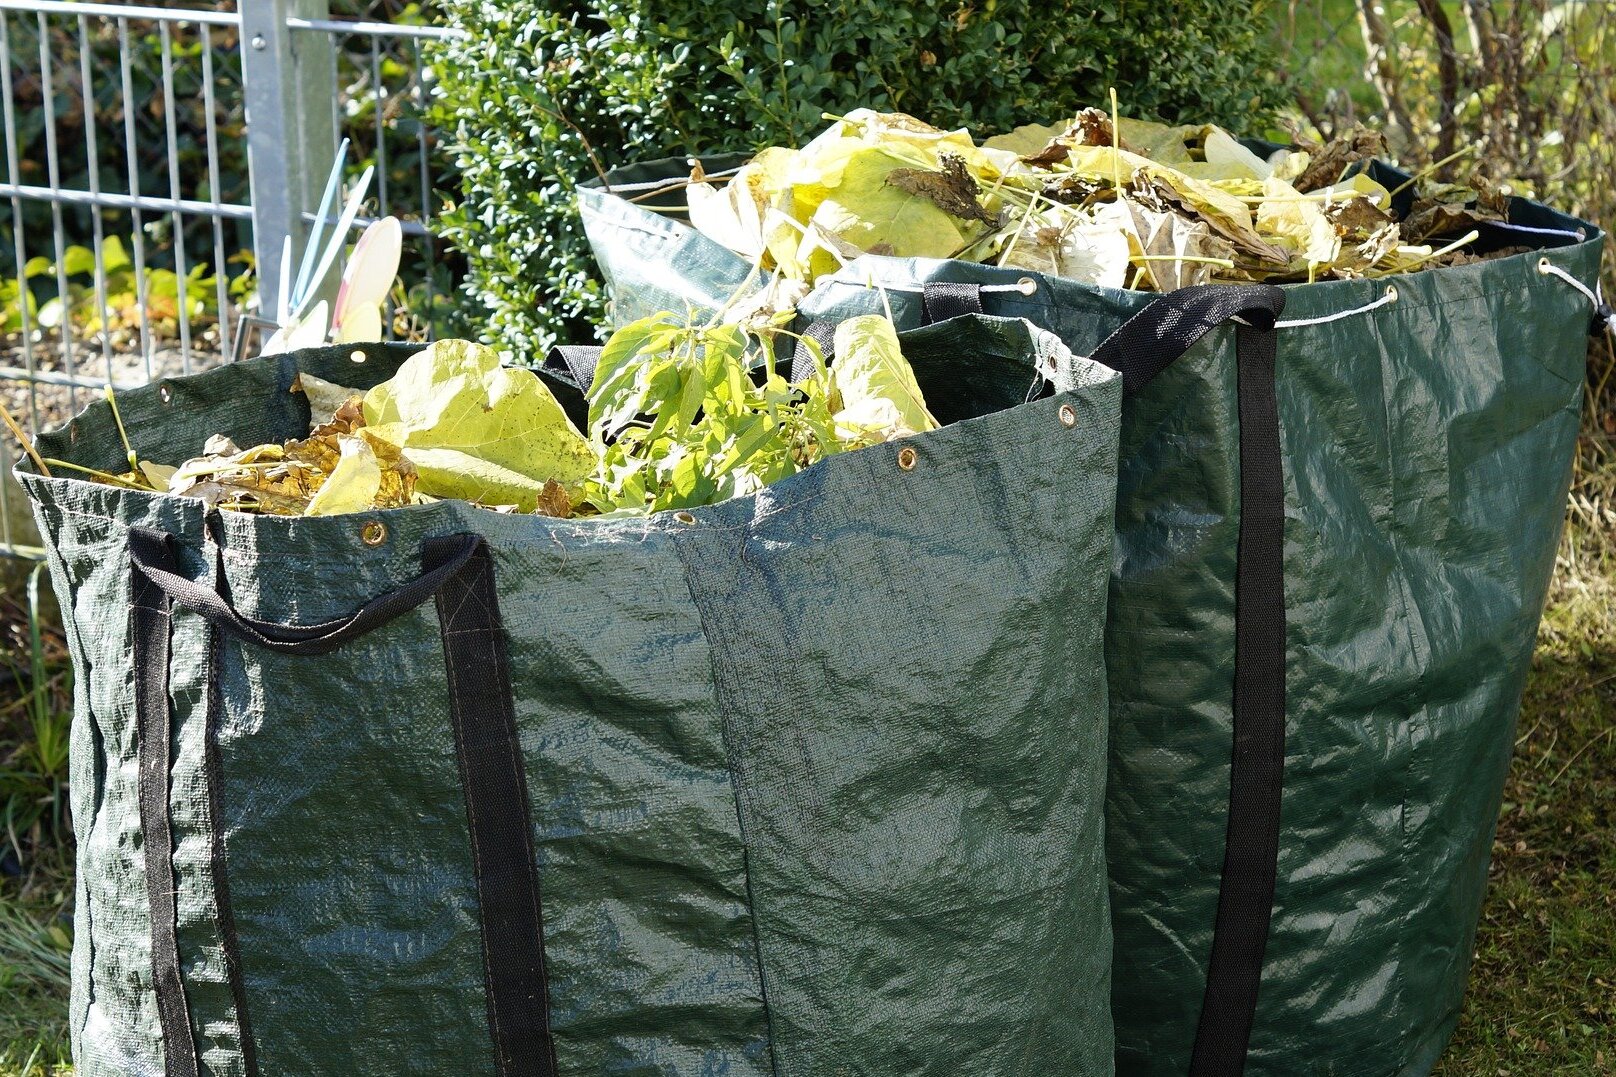 Zwei grüne Säcke mit Gartenabfällen (Laub).